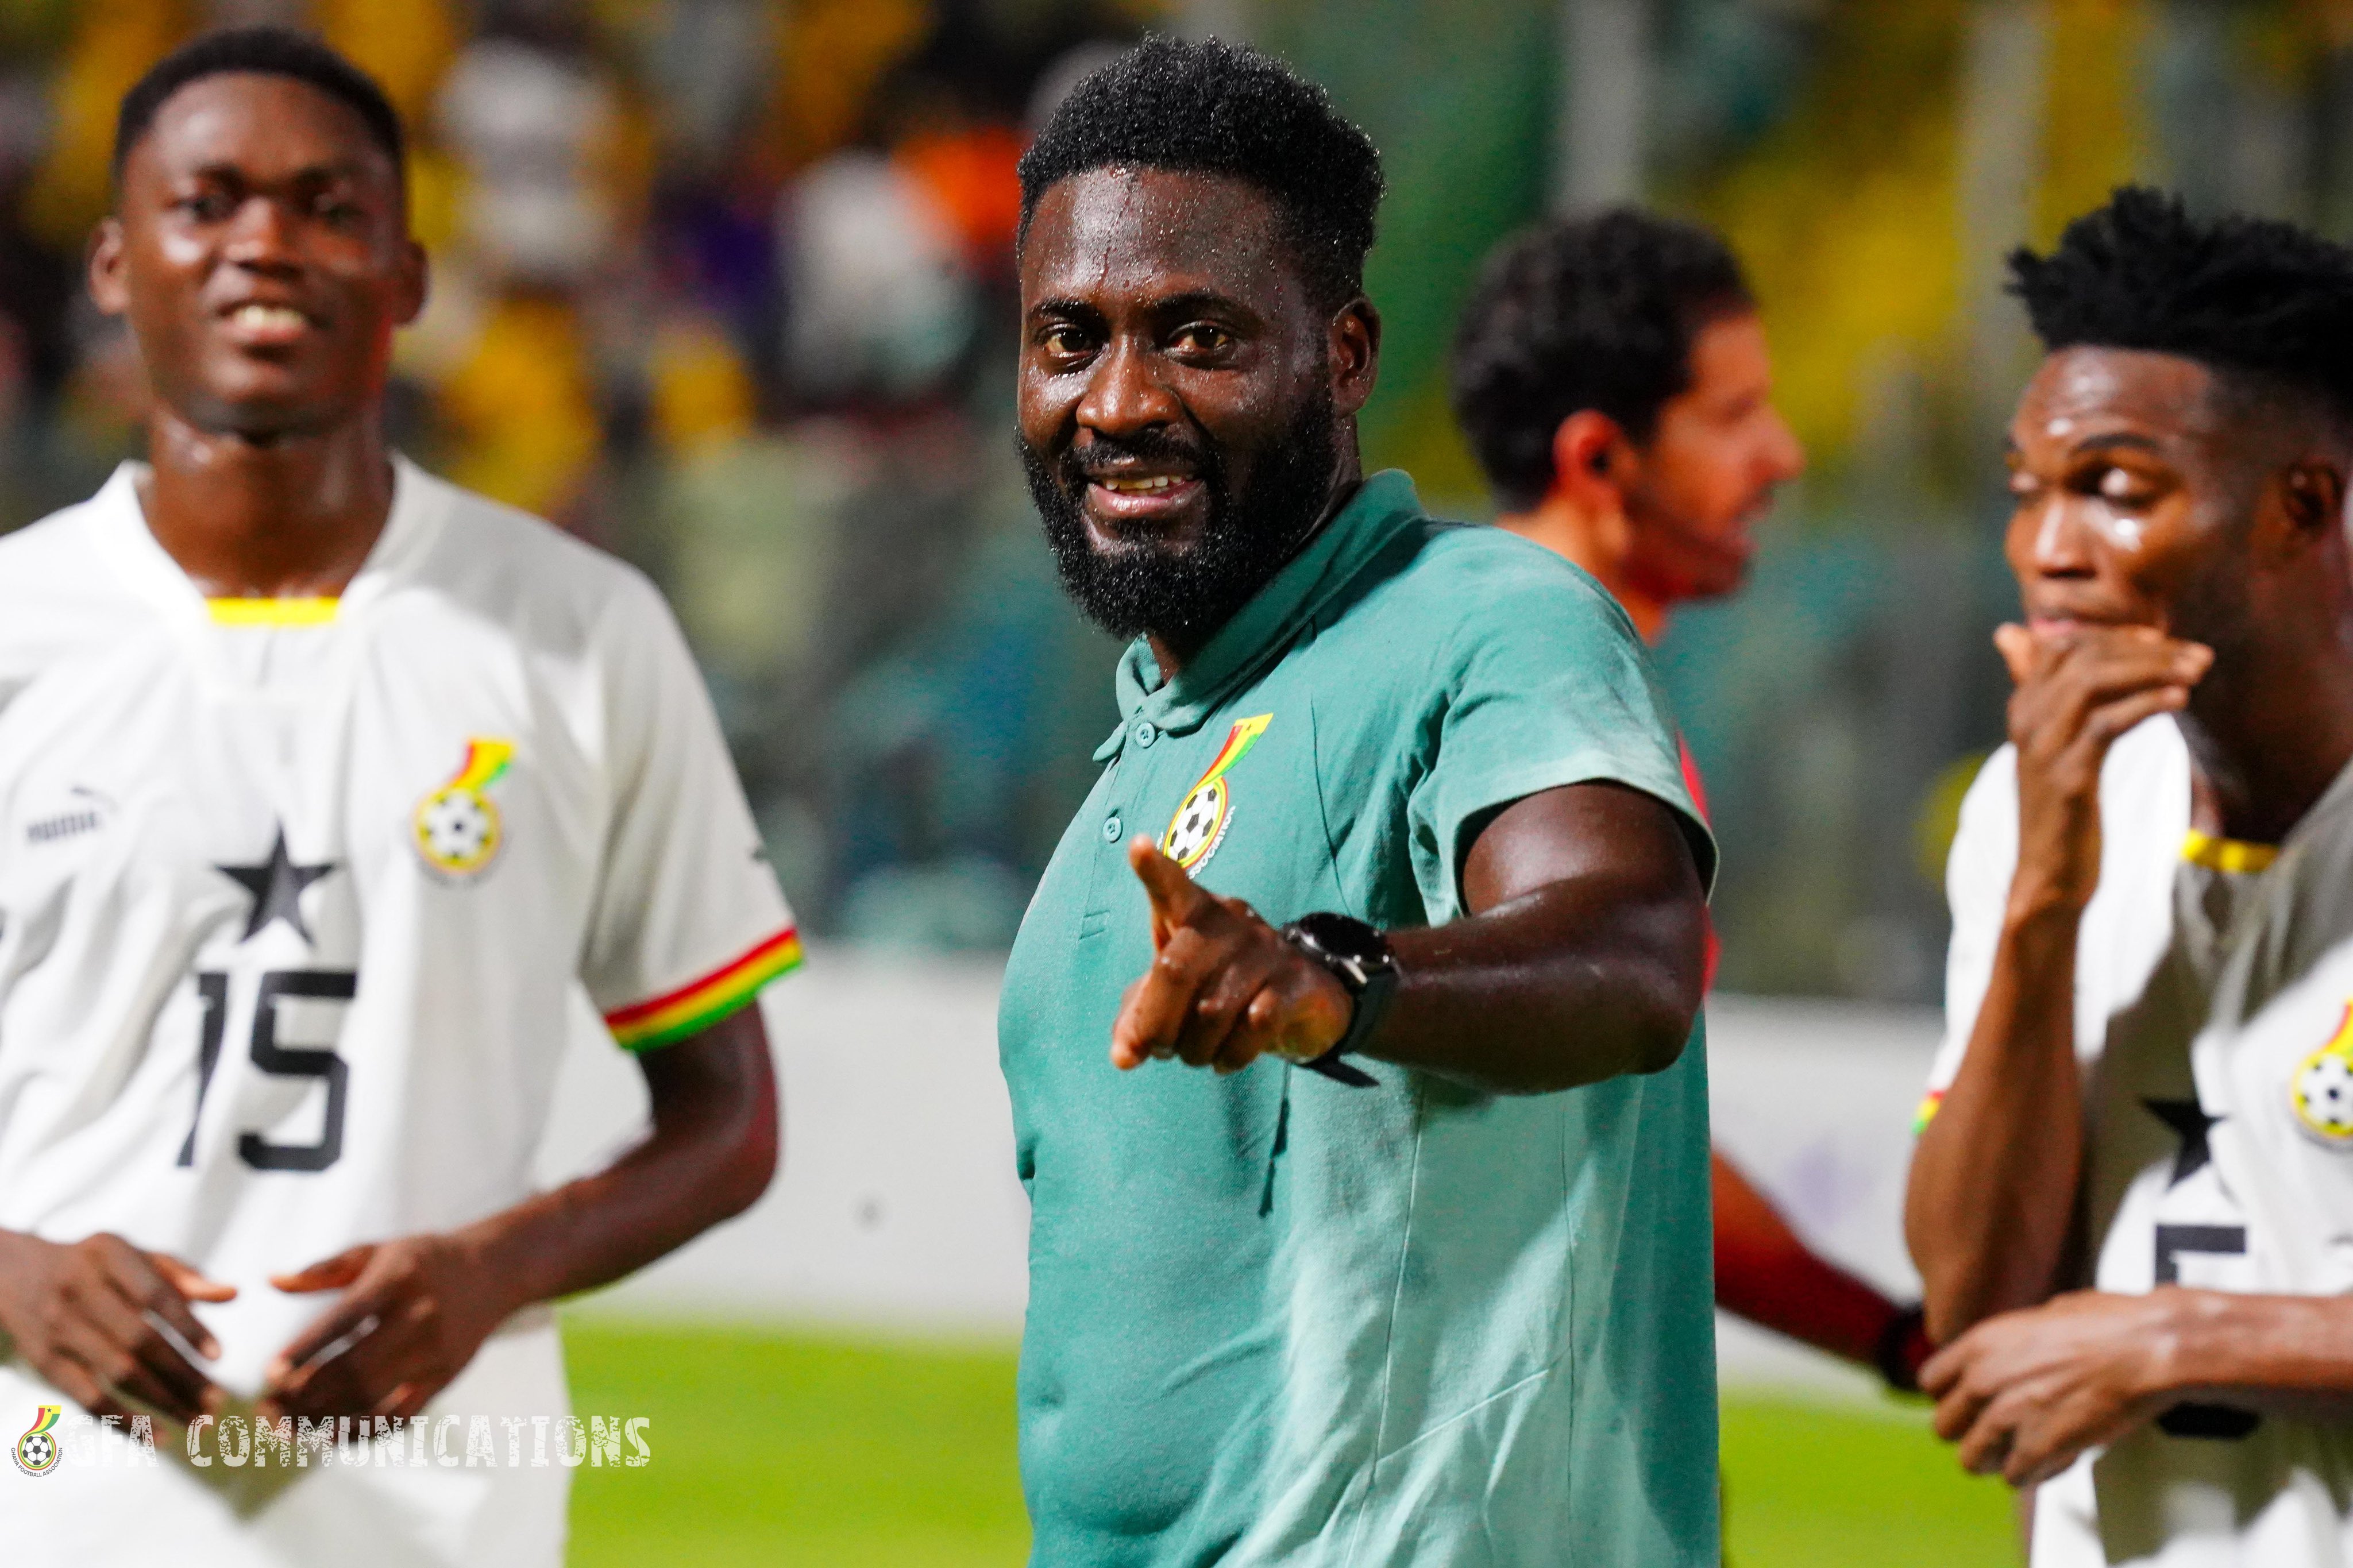 Ghana football DNA won us the gold, says Black Satellites coach Desmond Ofei